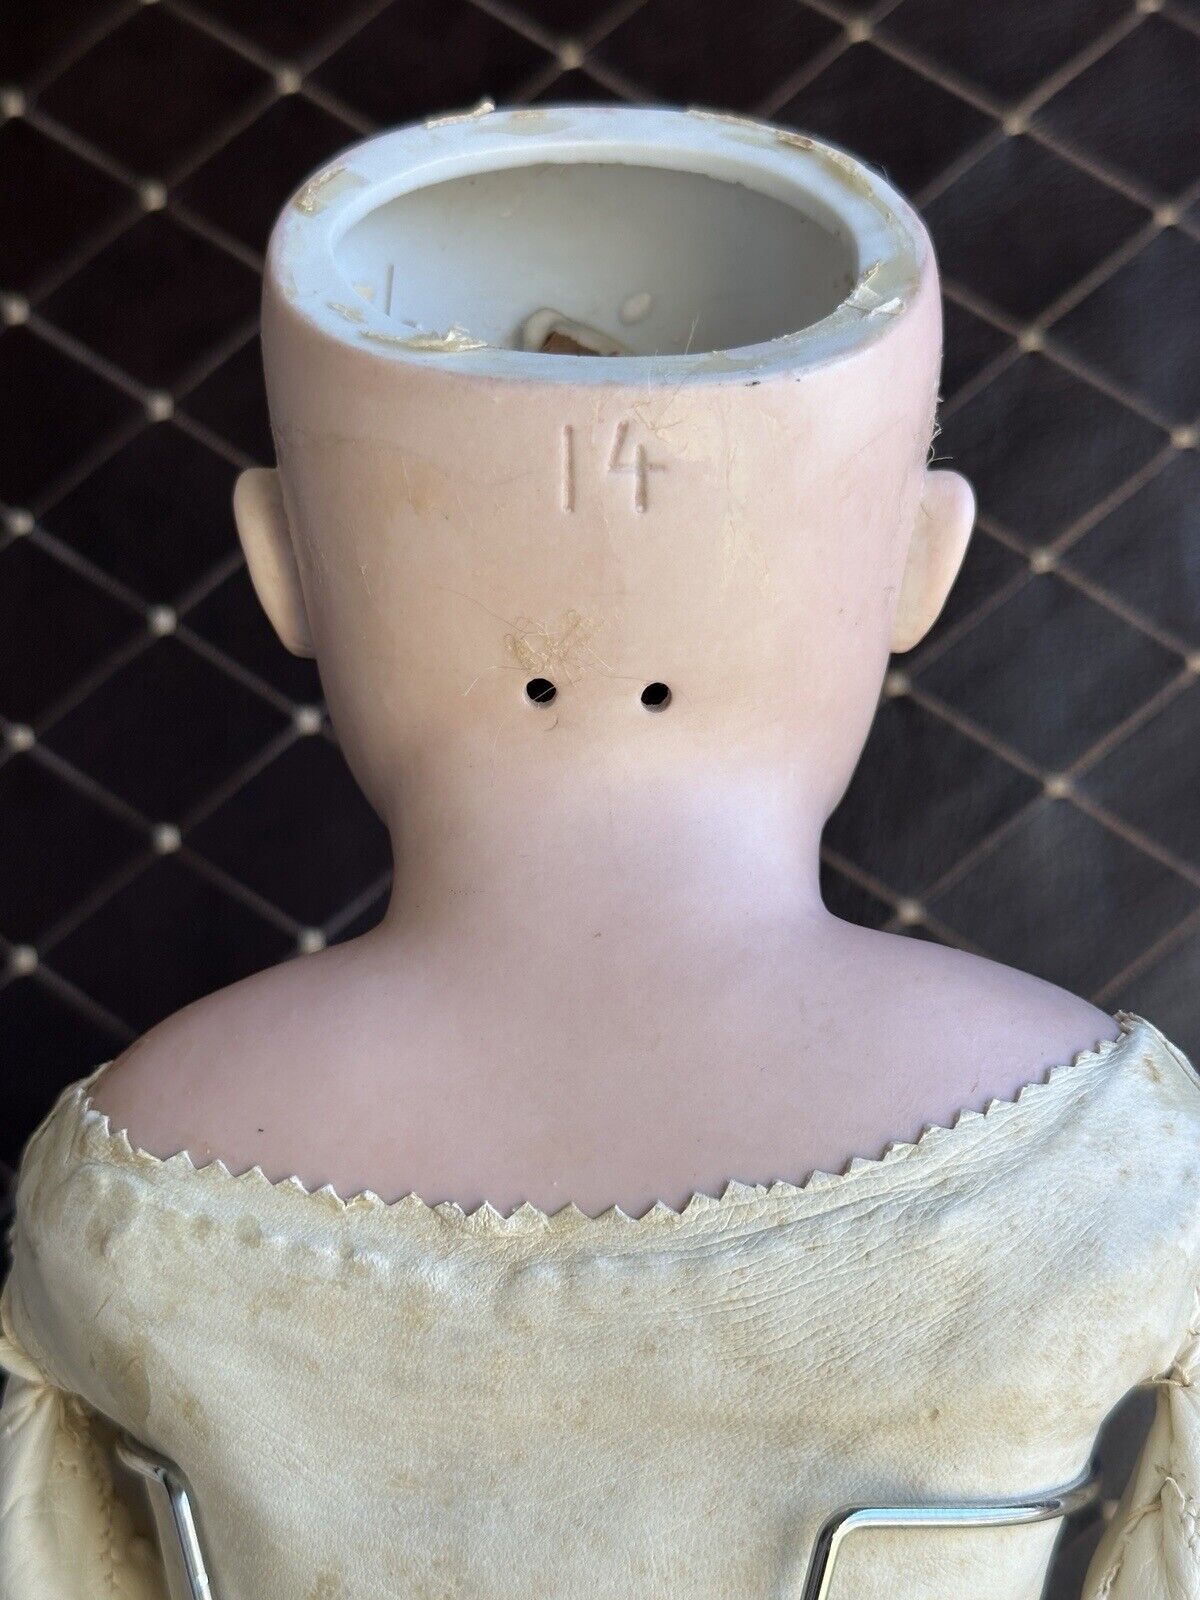 Large Antique German 27” Kestner Turned Bisque Shoulder Head Doll